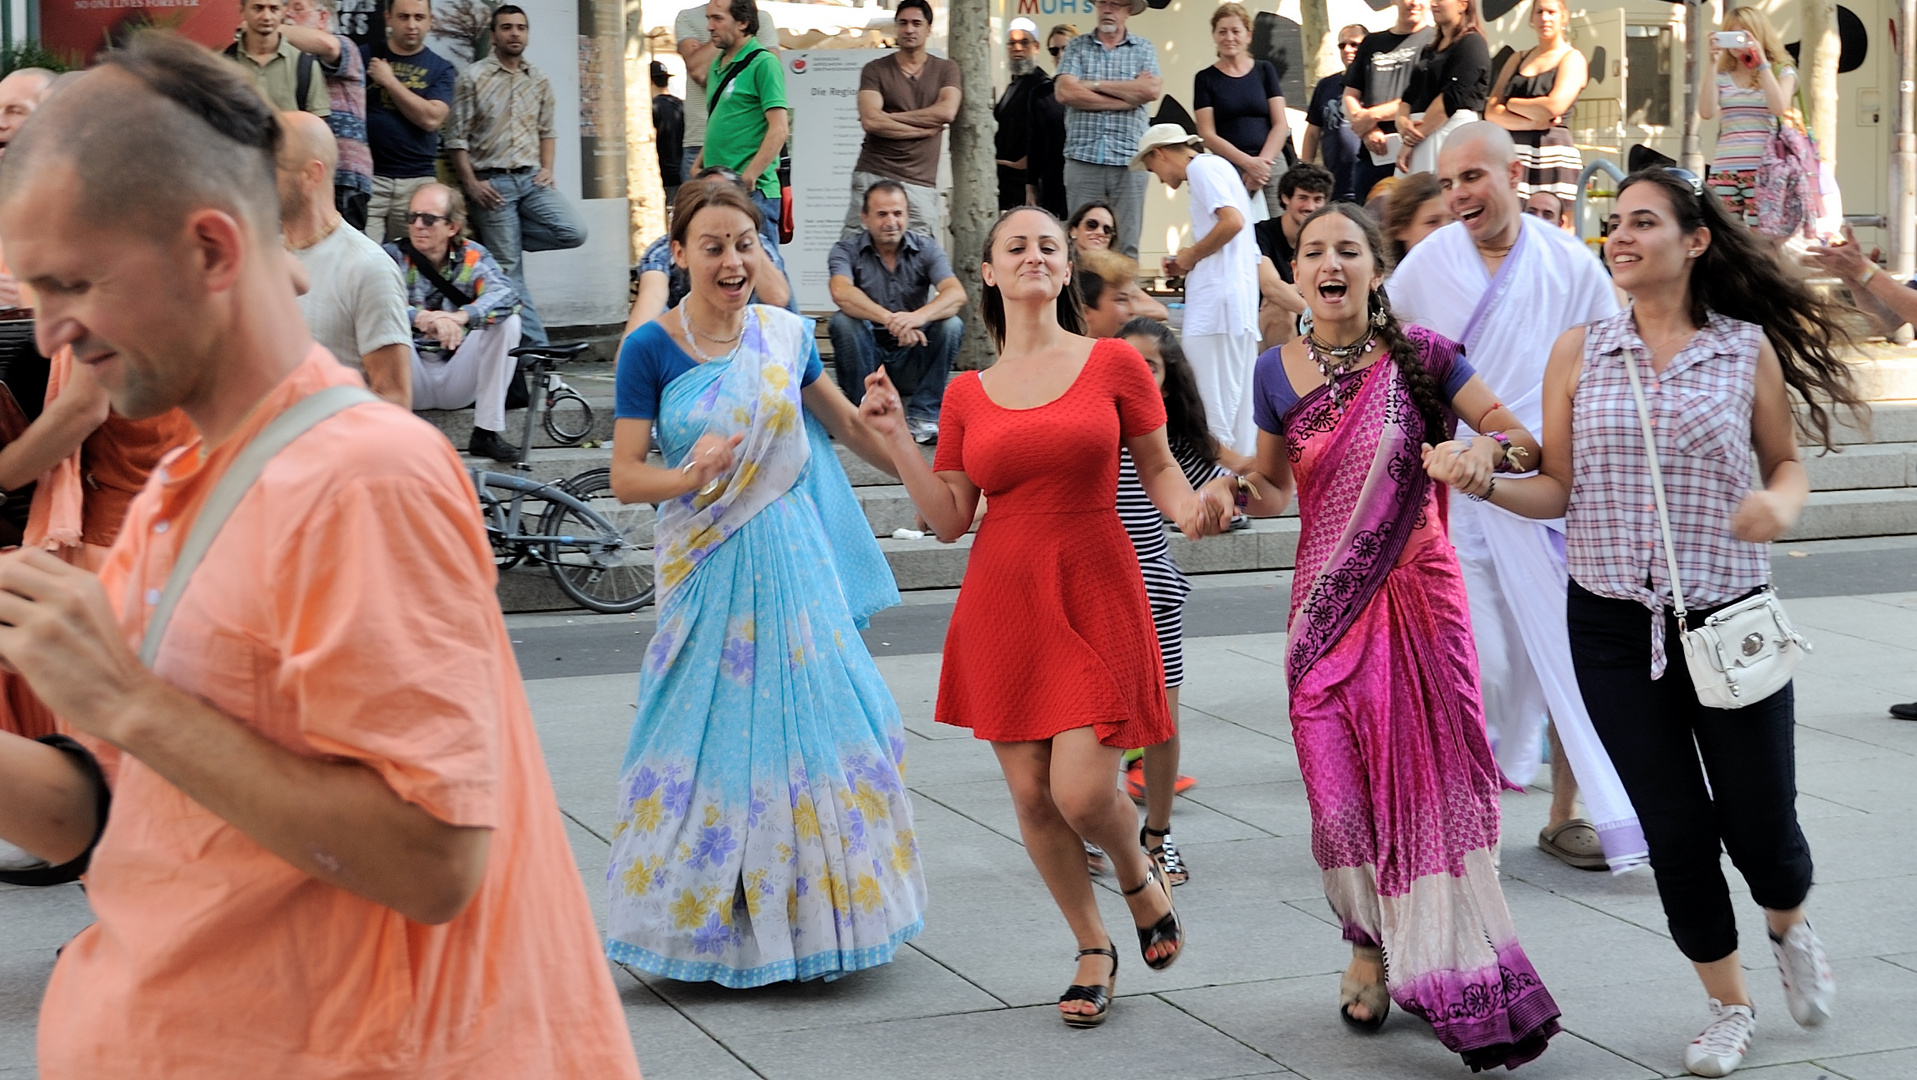 Streetdance in Frankfurt Konstablerwache